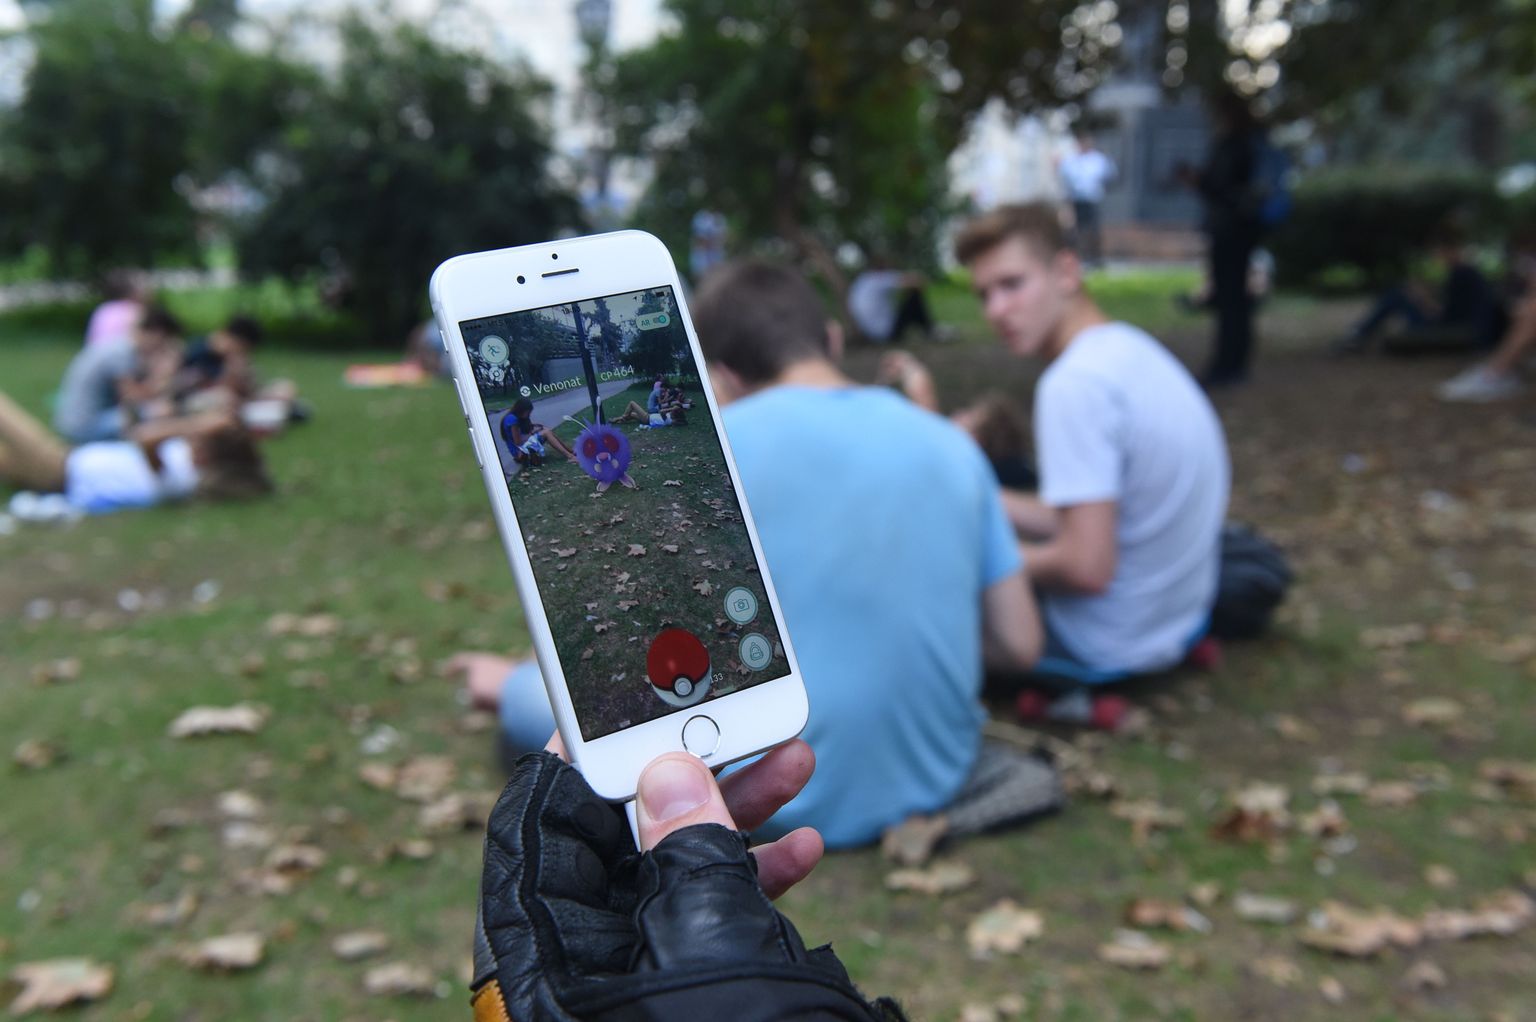 Pokemon Go'ga sarnased virtuaalreaalsusel põhinevad lahendused võivad peagi saada üsna tavaliseks ka teenindussektoris.